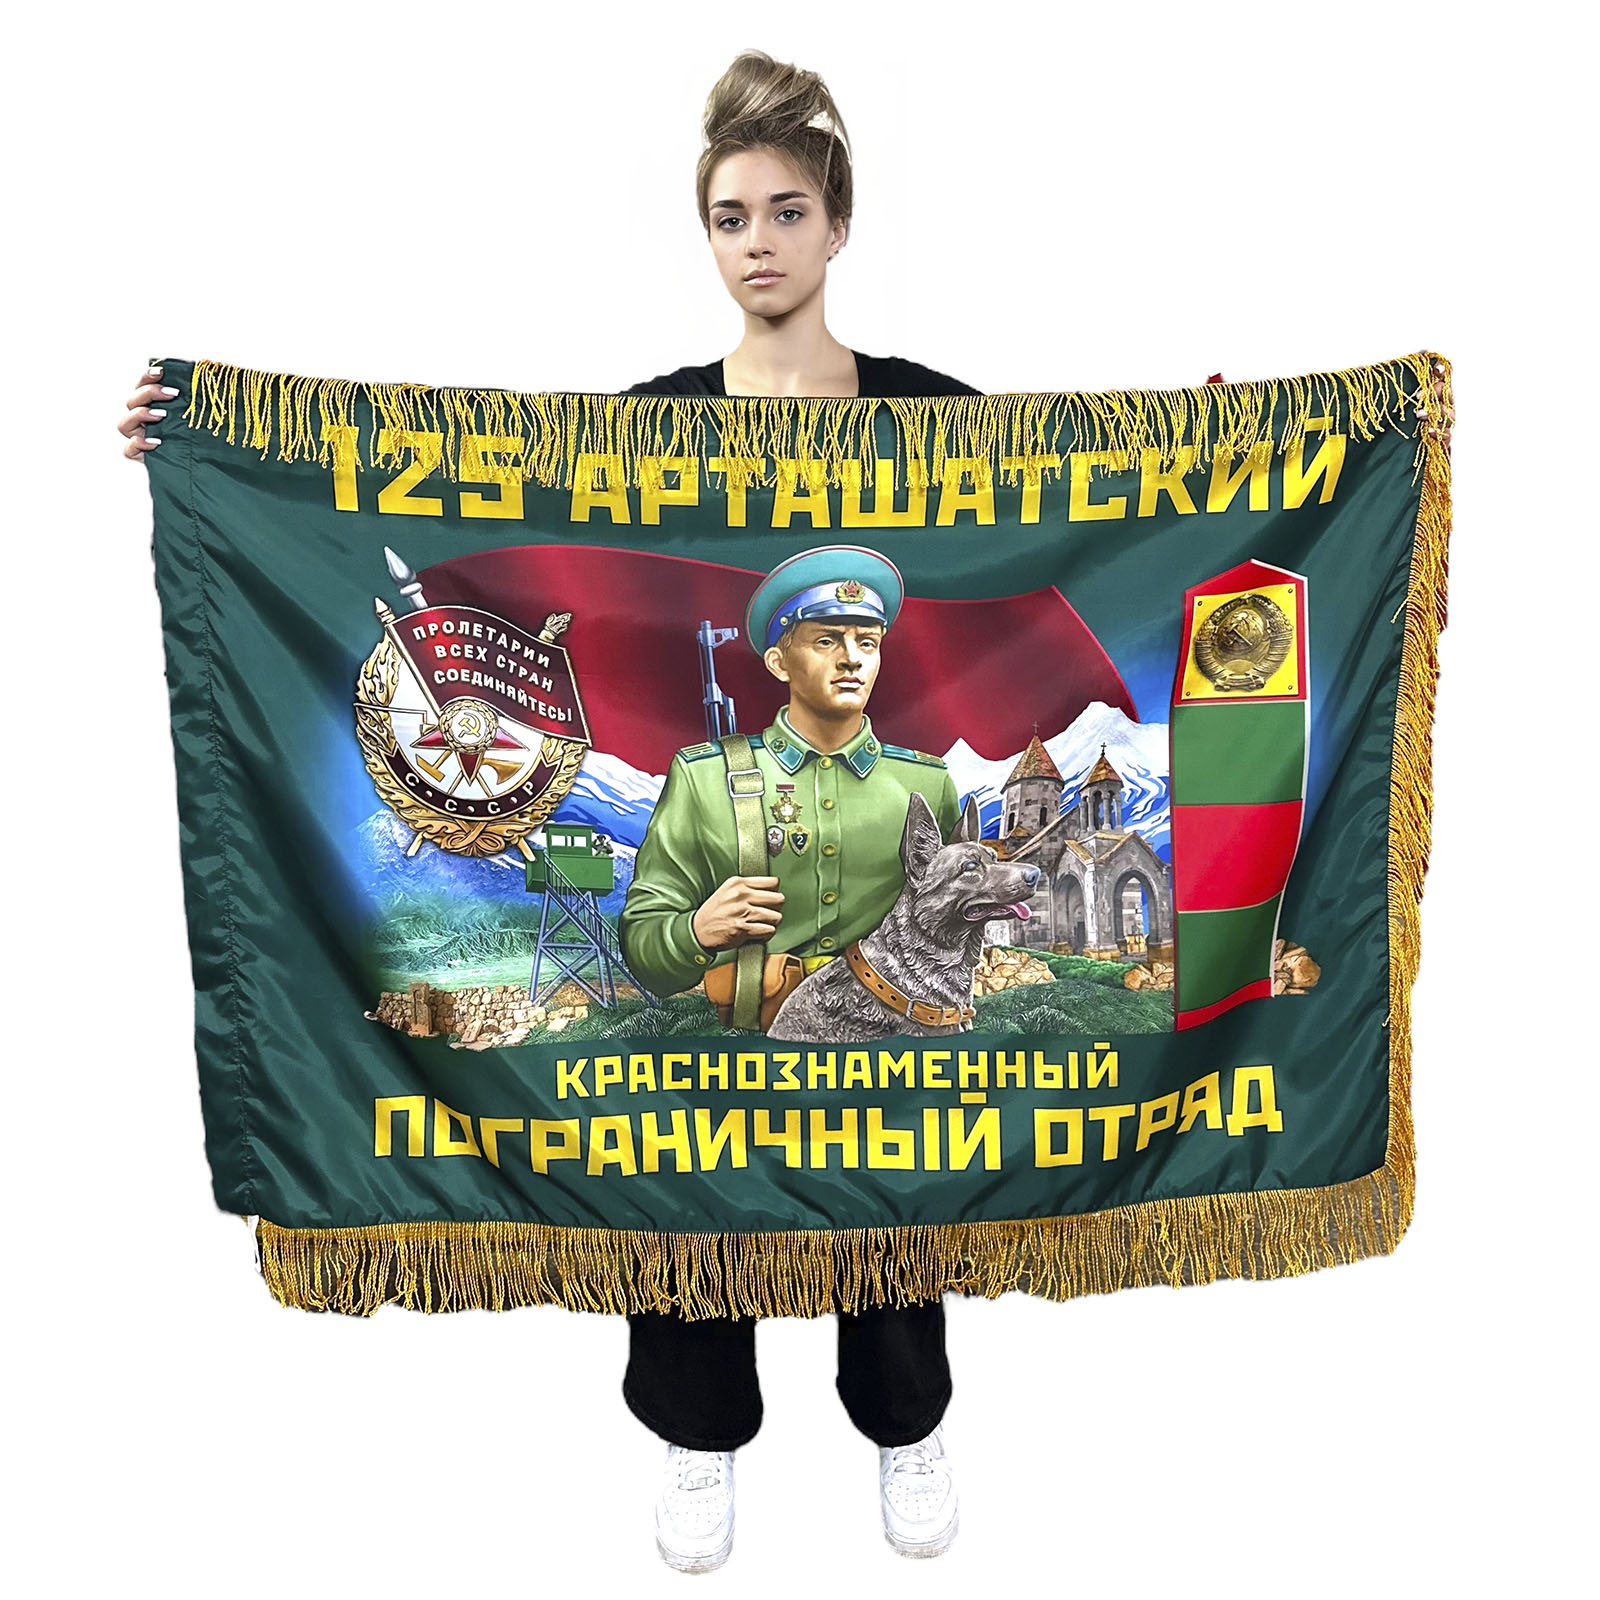 Двухсторонний флаг 125-го Арташатского краснознаменного пограничного отряда с бахромой